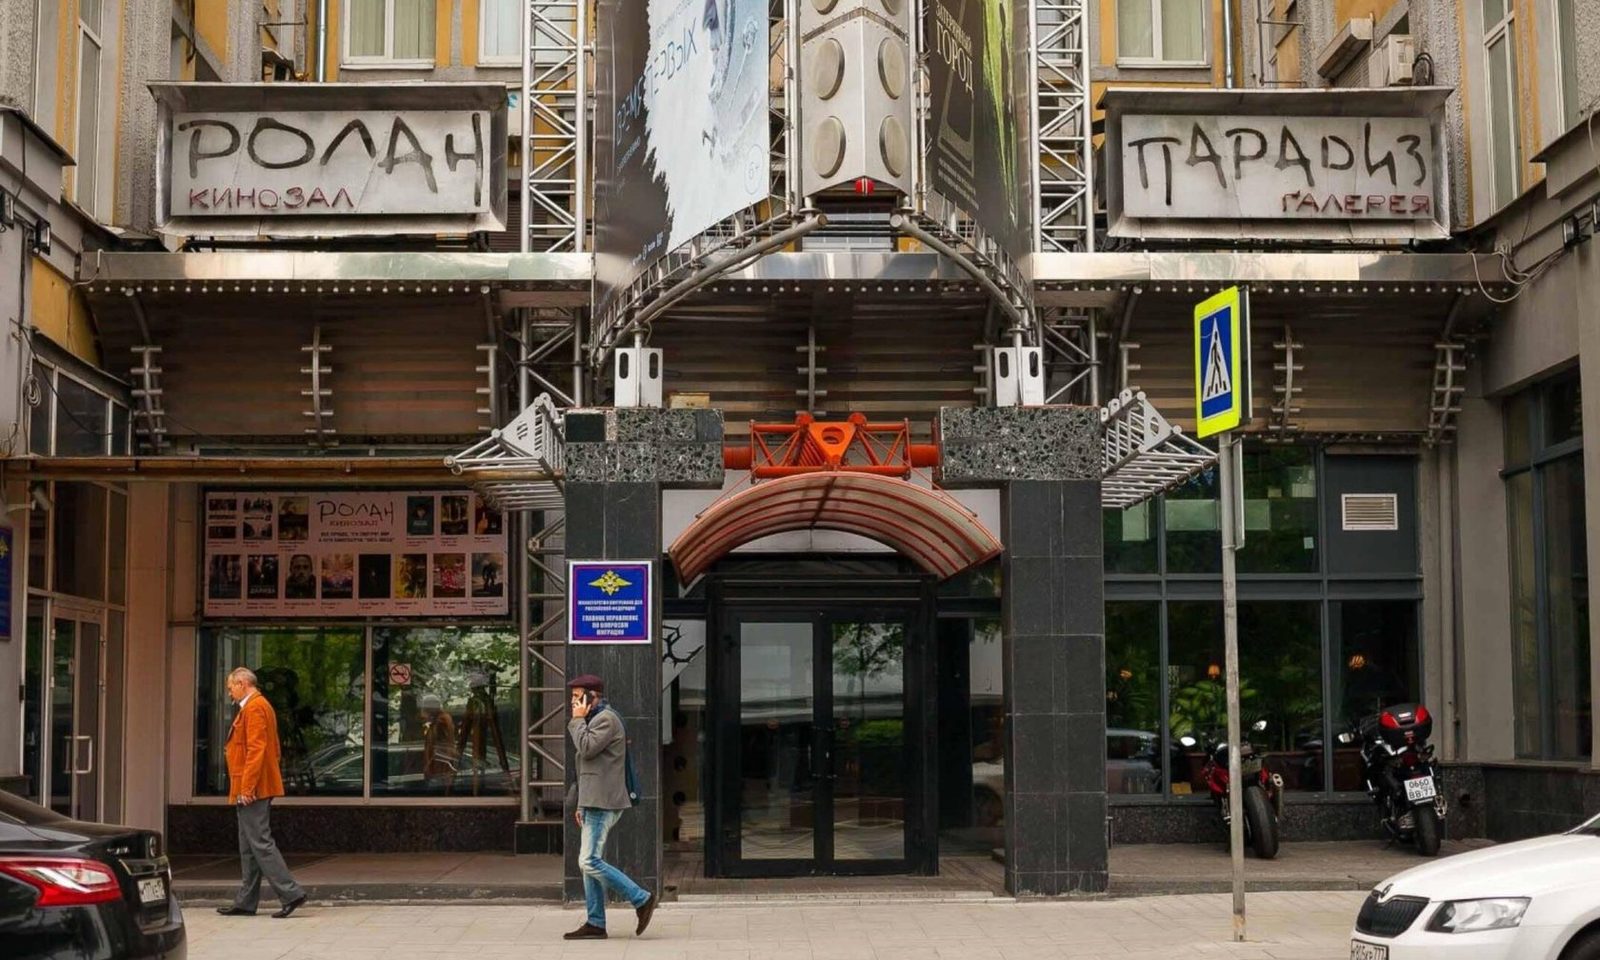 Московский кинотеатр «Ролан» находится на грани закрытия